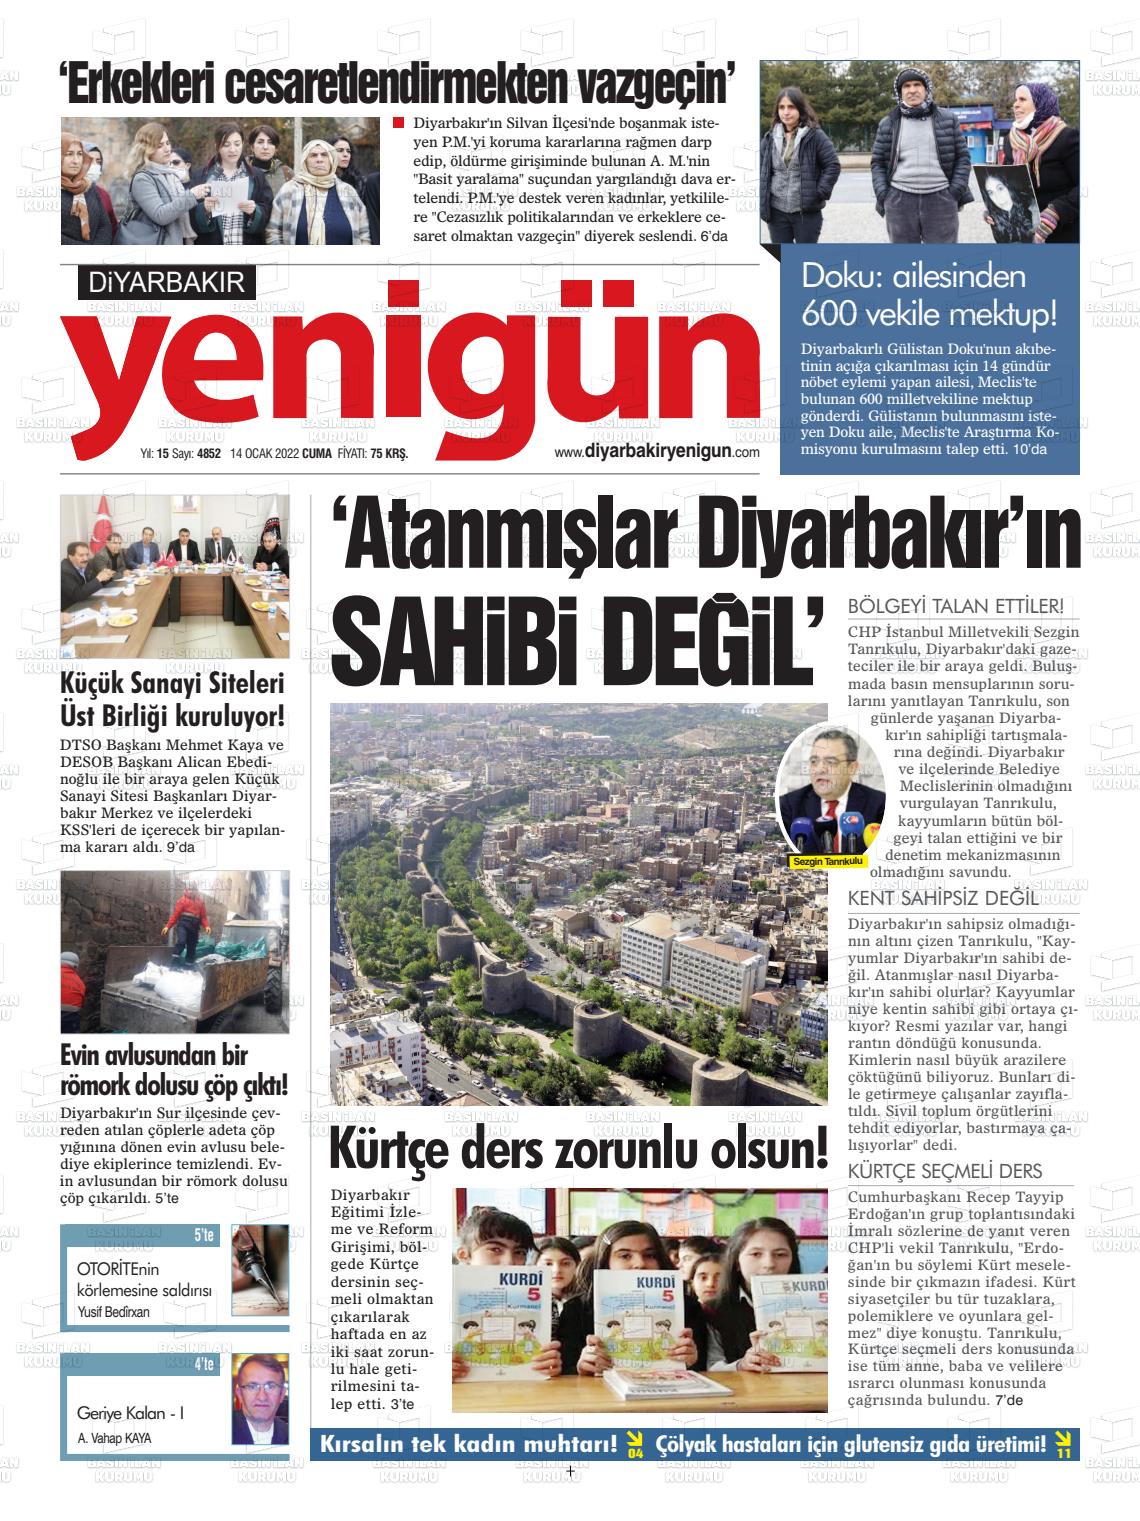 14 Ocak 2022 Diyarbakır Yenigün Gazete Manşeti